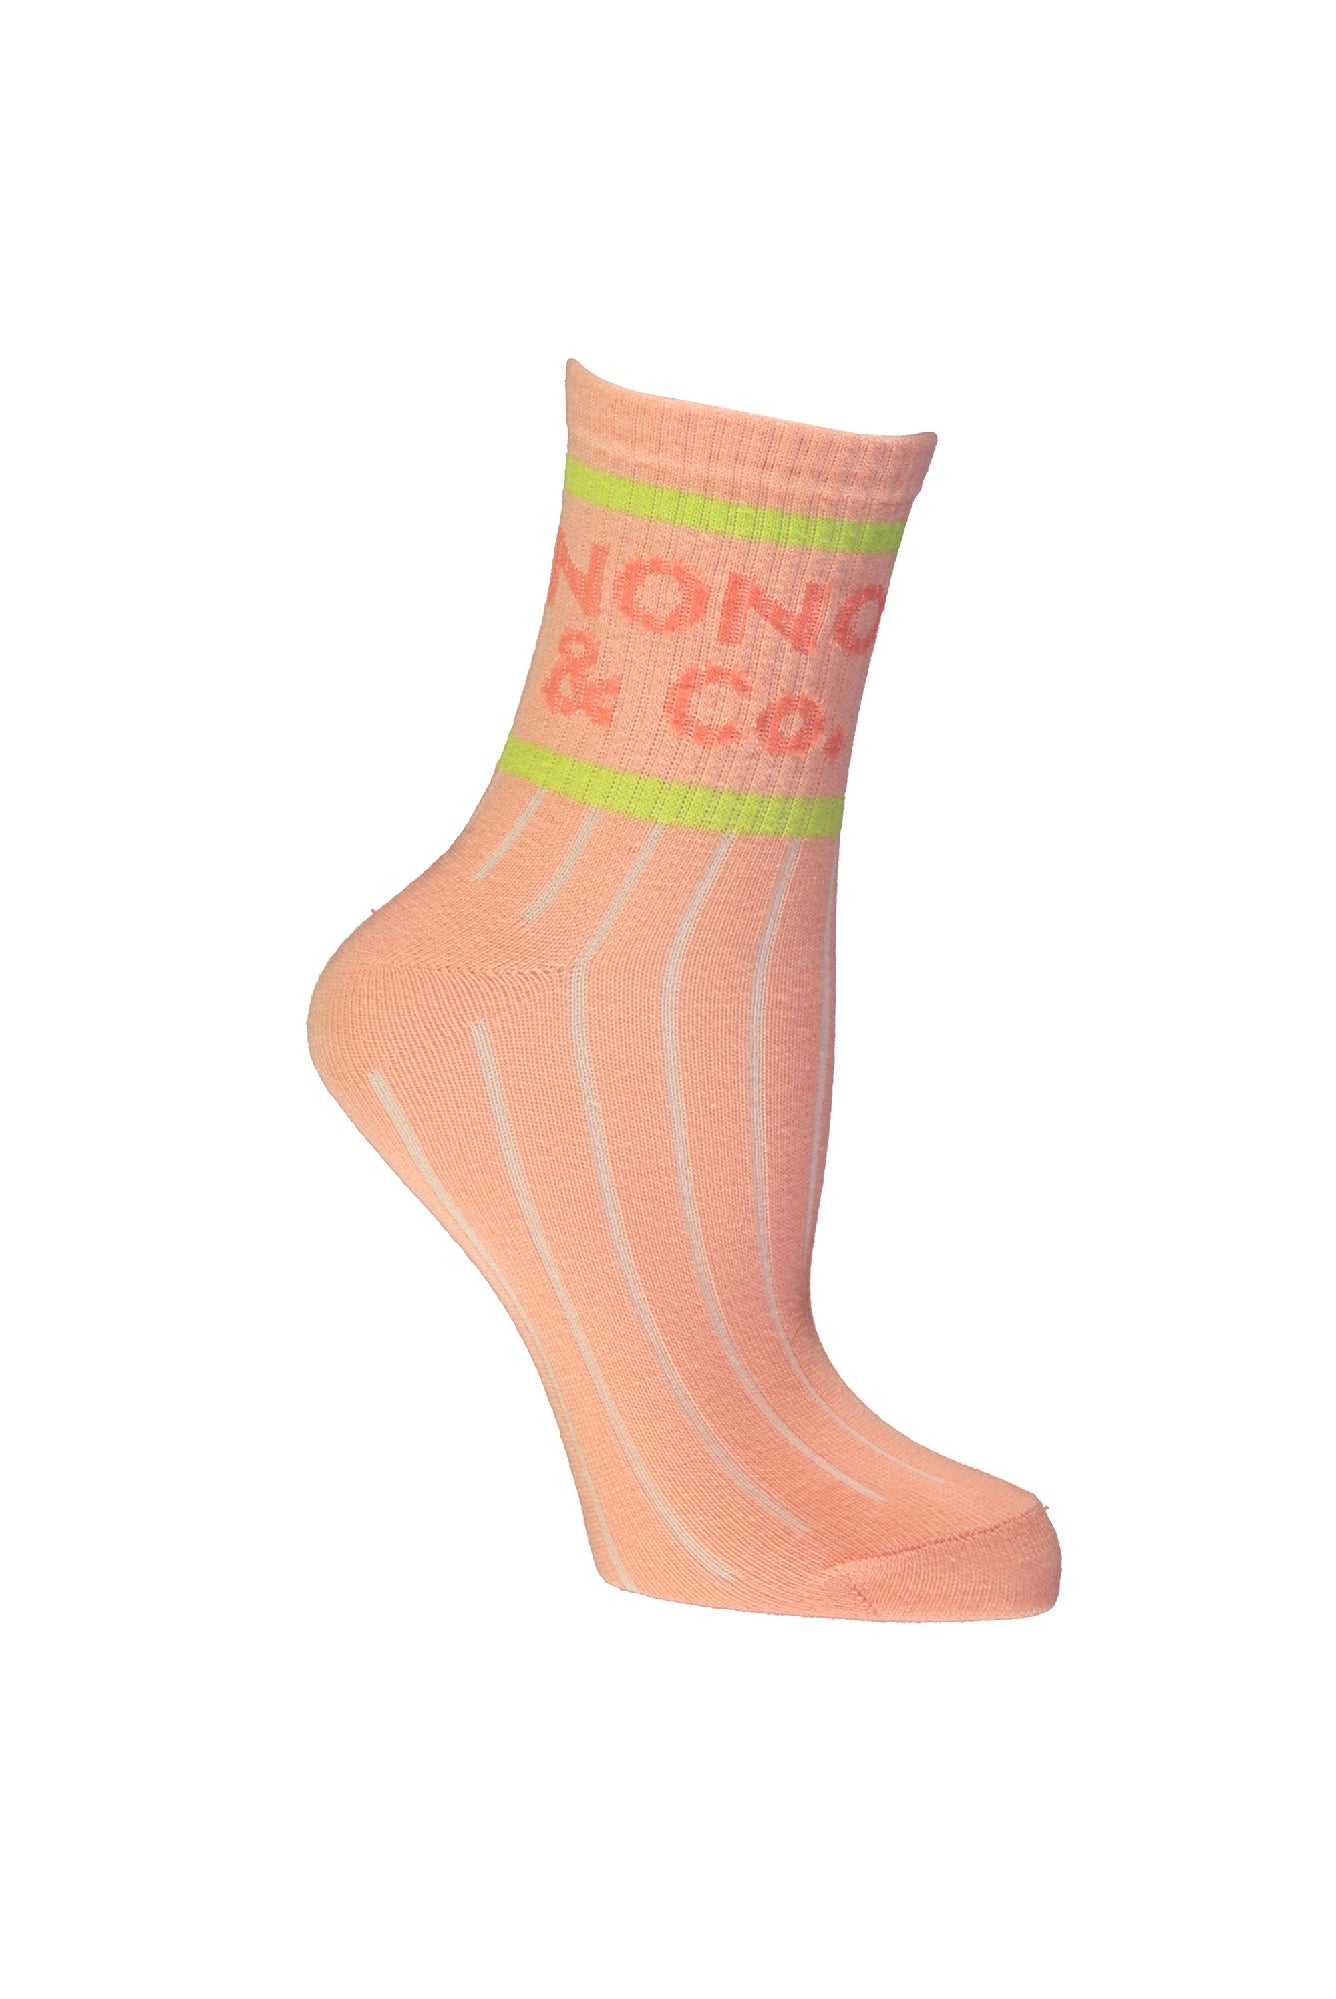 Meisjes Rosy sporty NONO & CO sock van NoNo in de kleur Light Peach in maat 122-140.